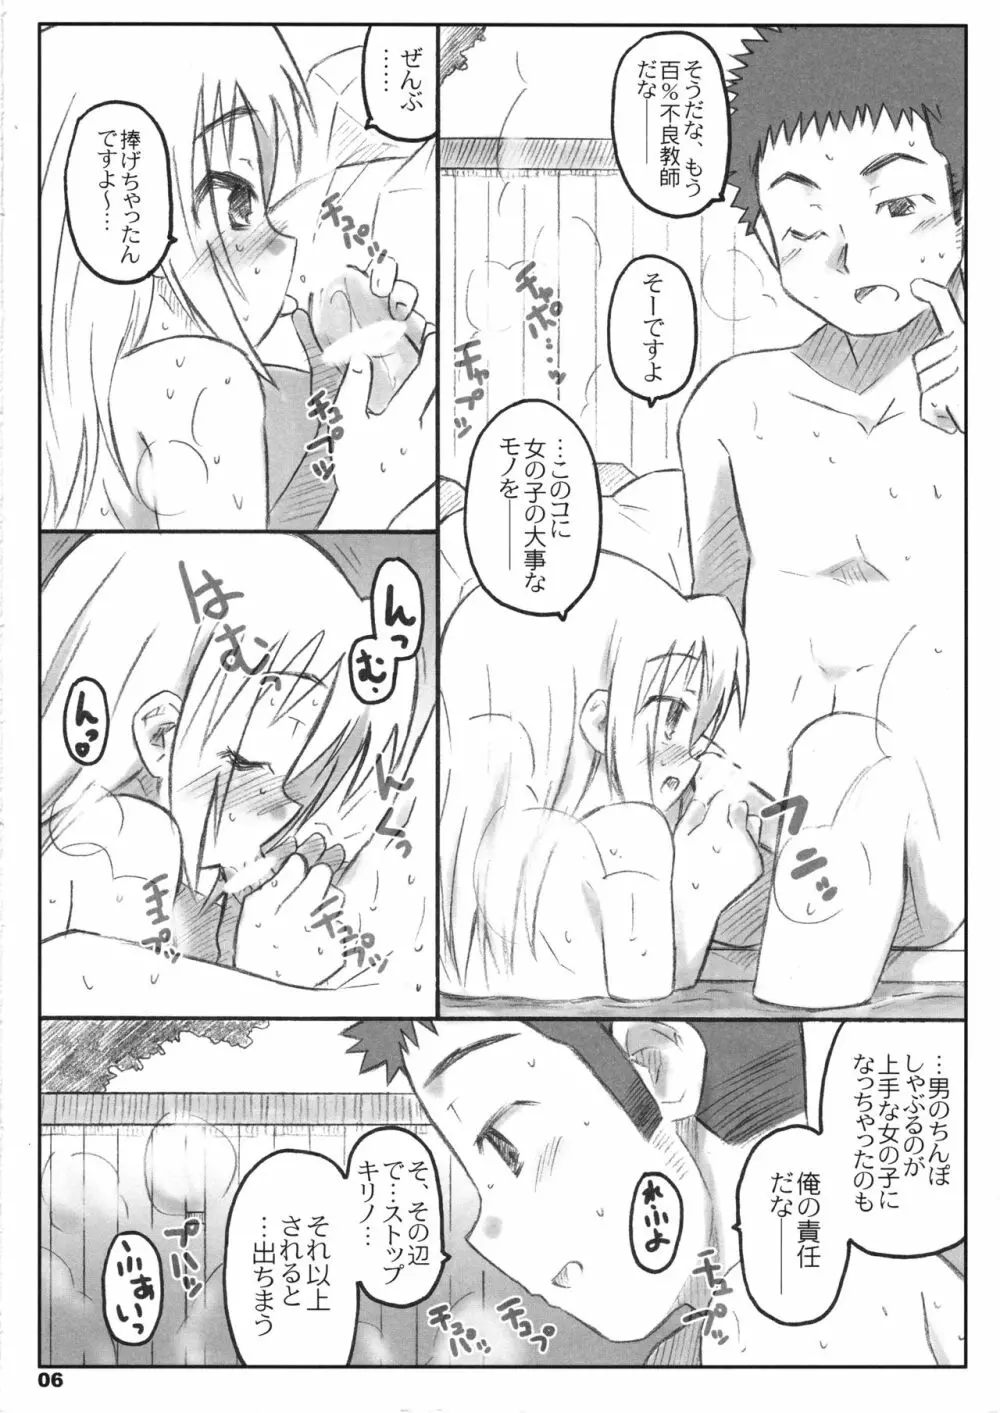 びーびーくいーんずコジキリ3本目! - page5